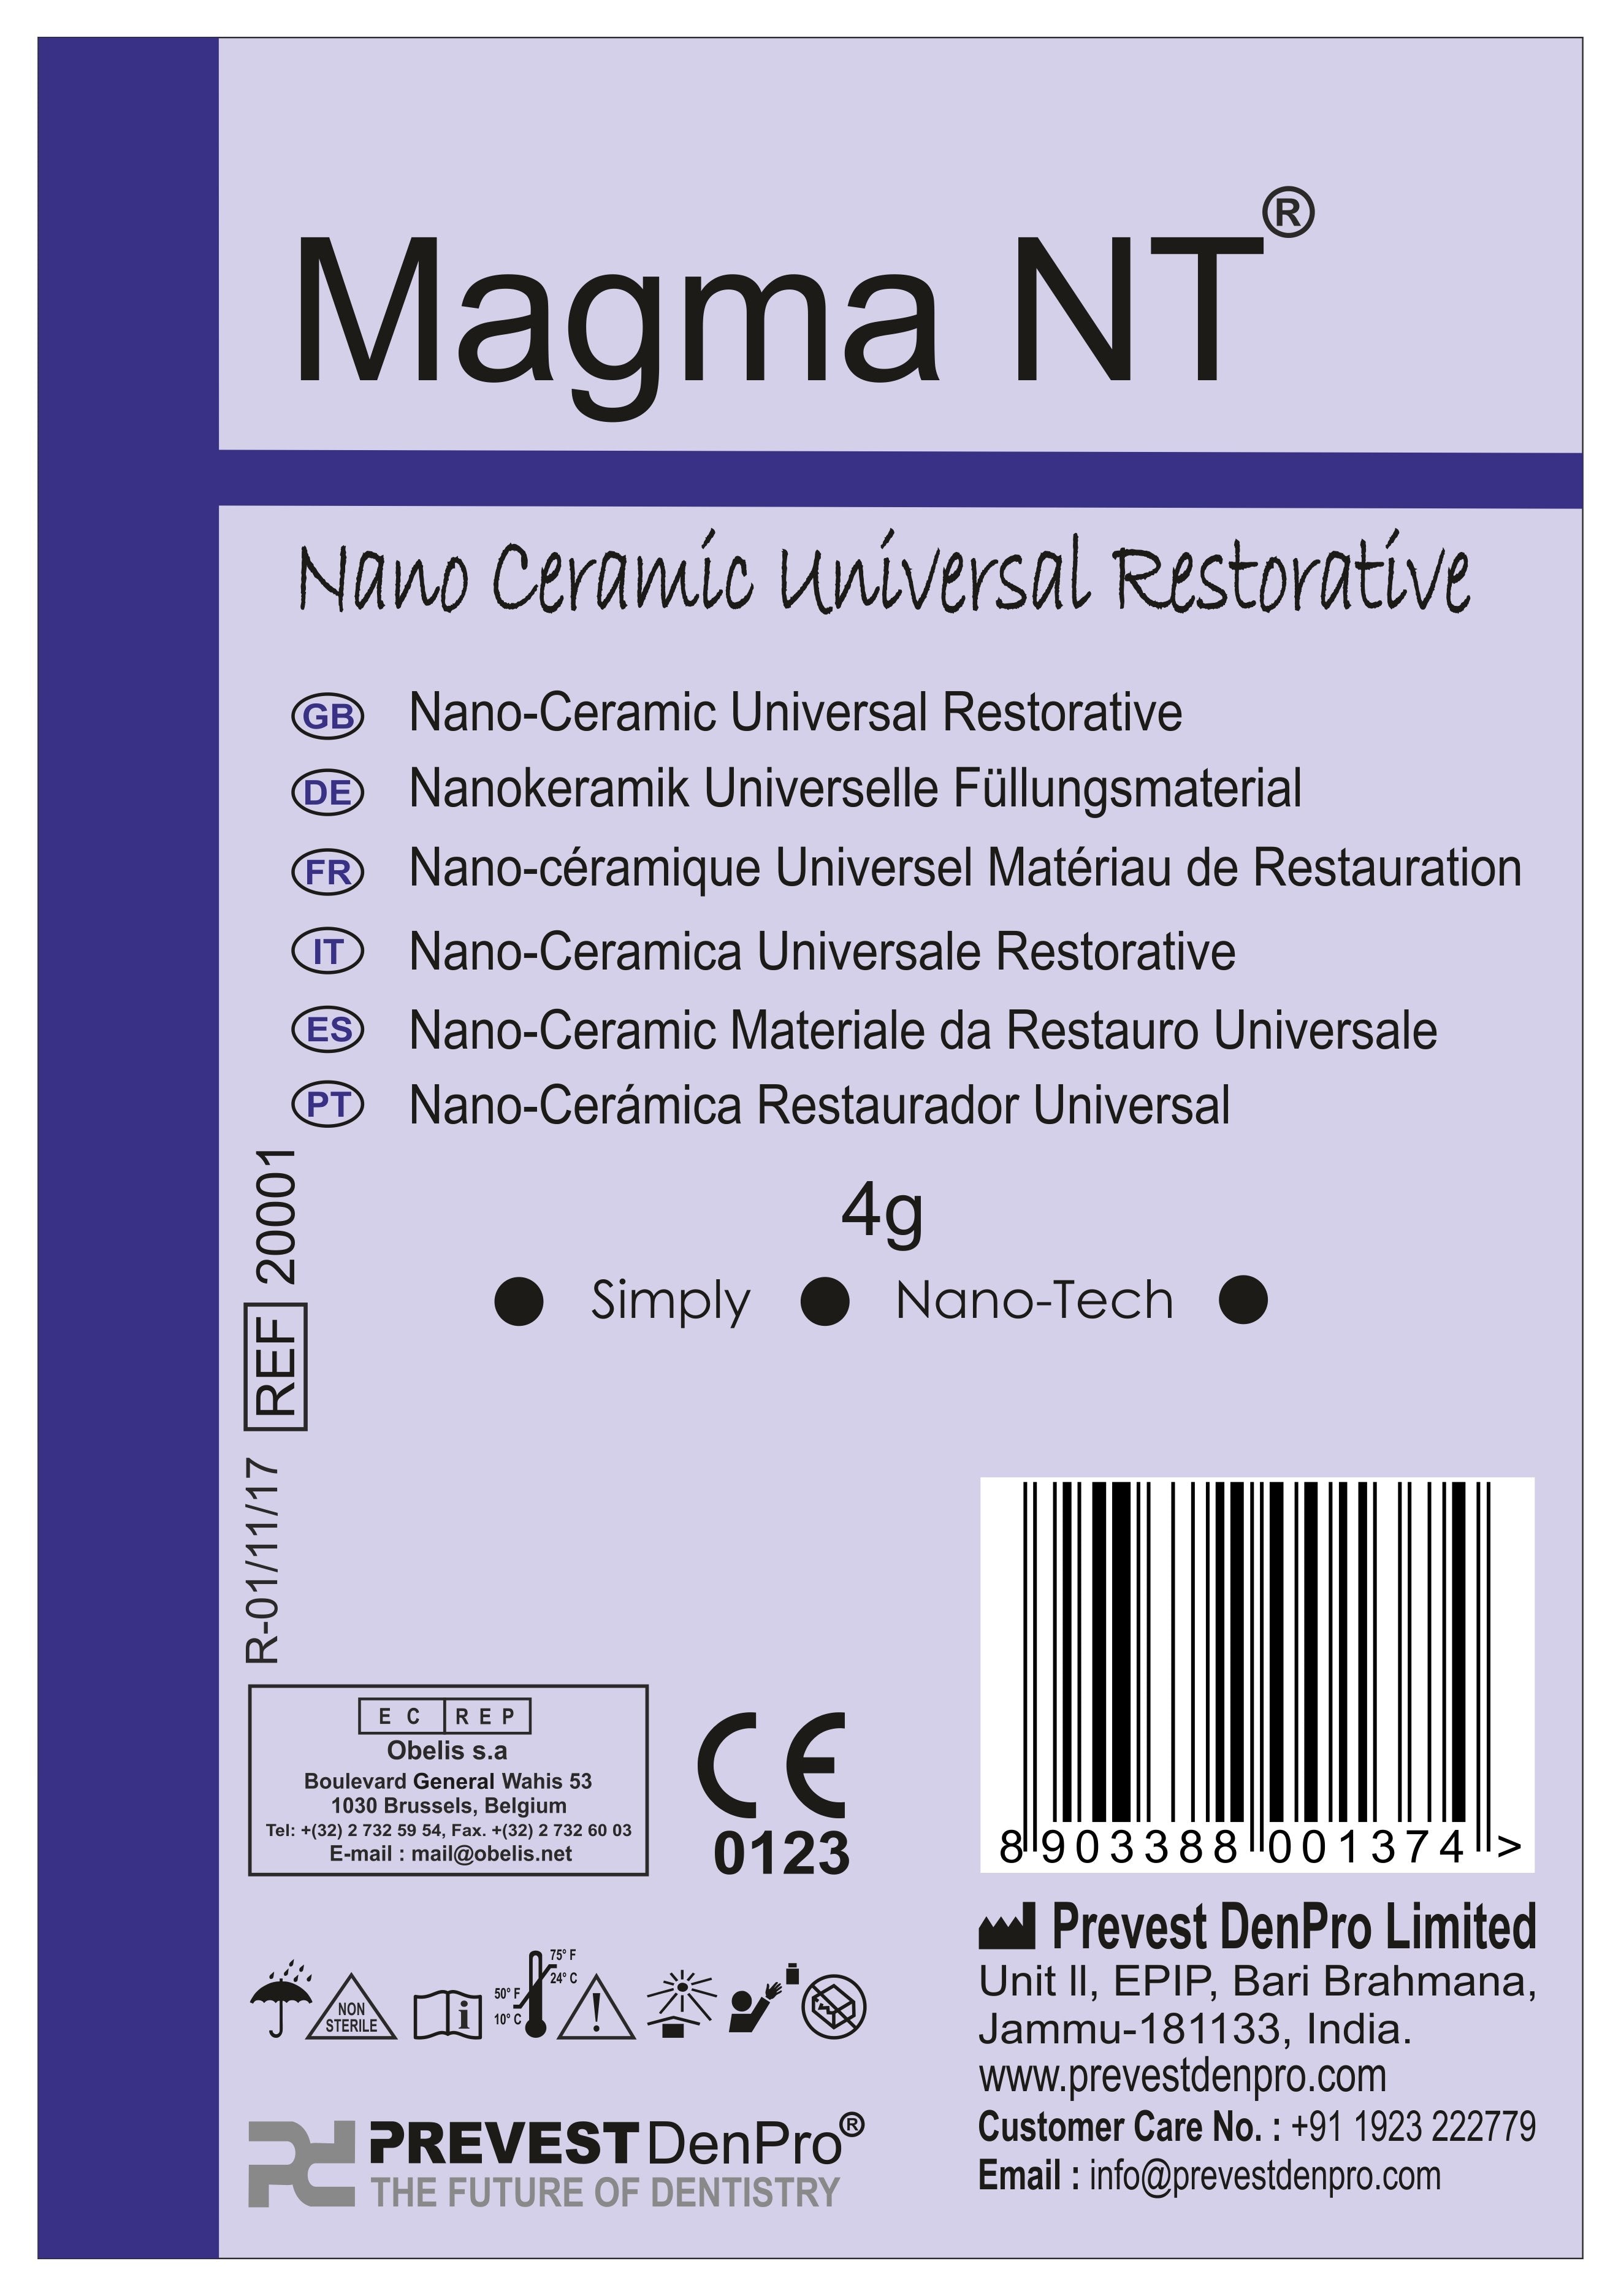 Magma NT